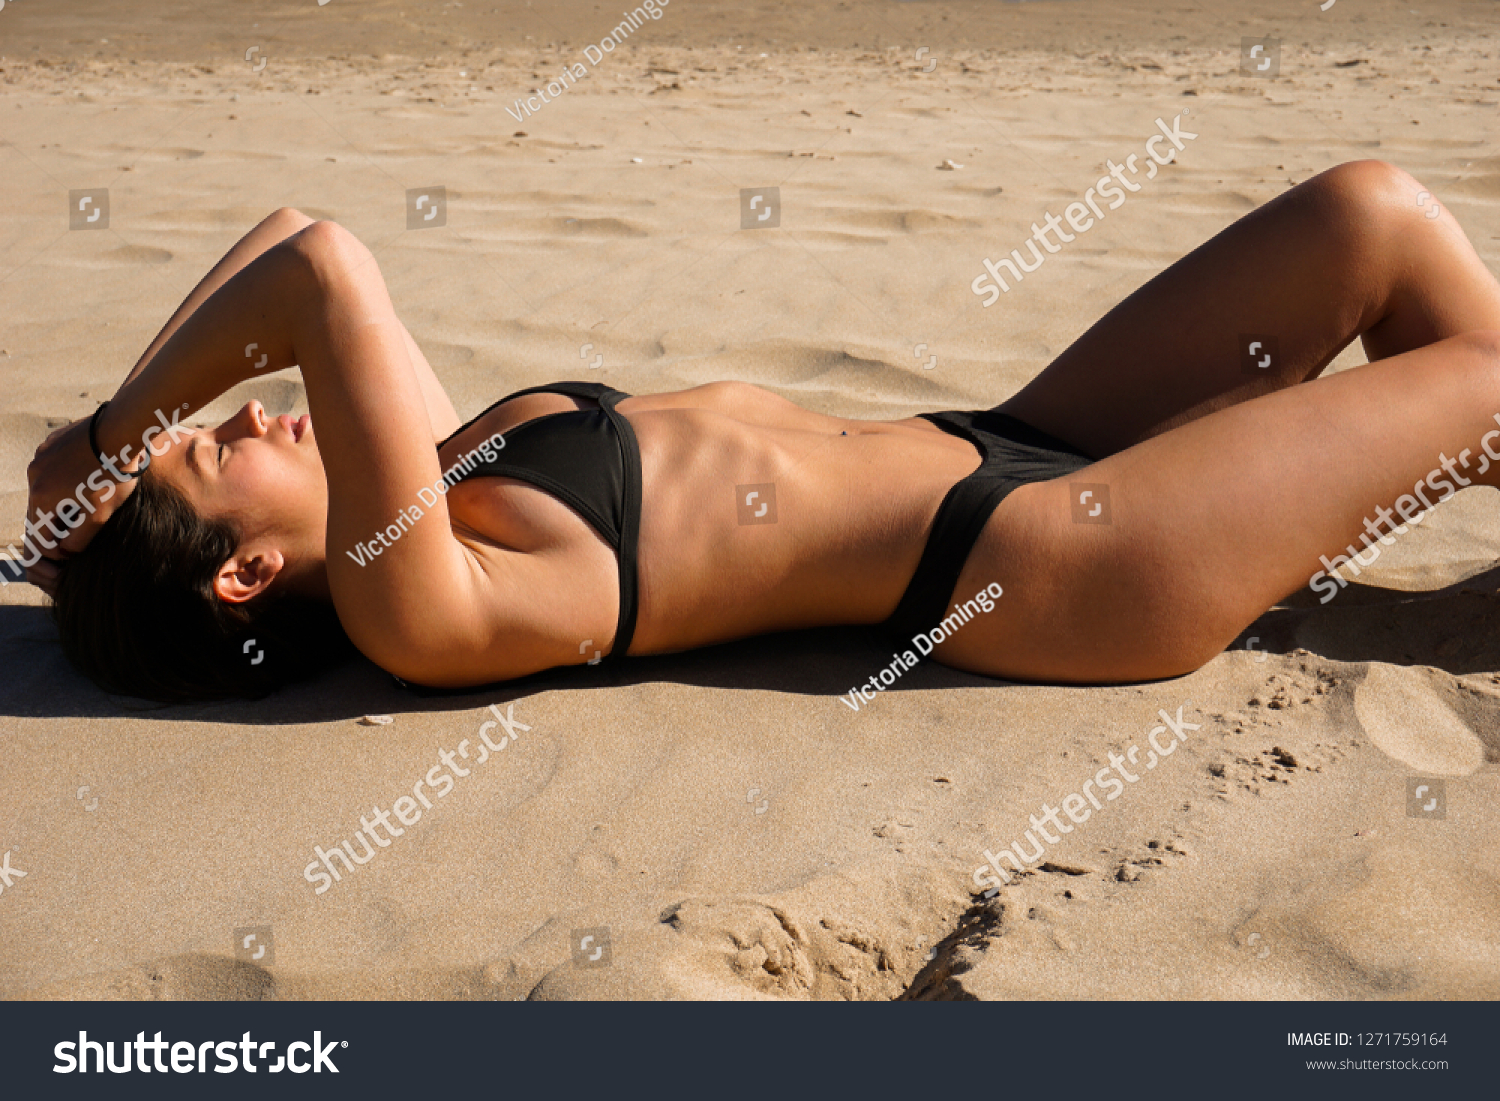 mediterranean girls in bikinis